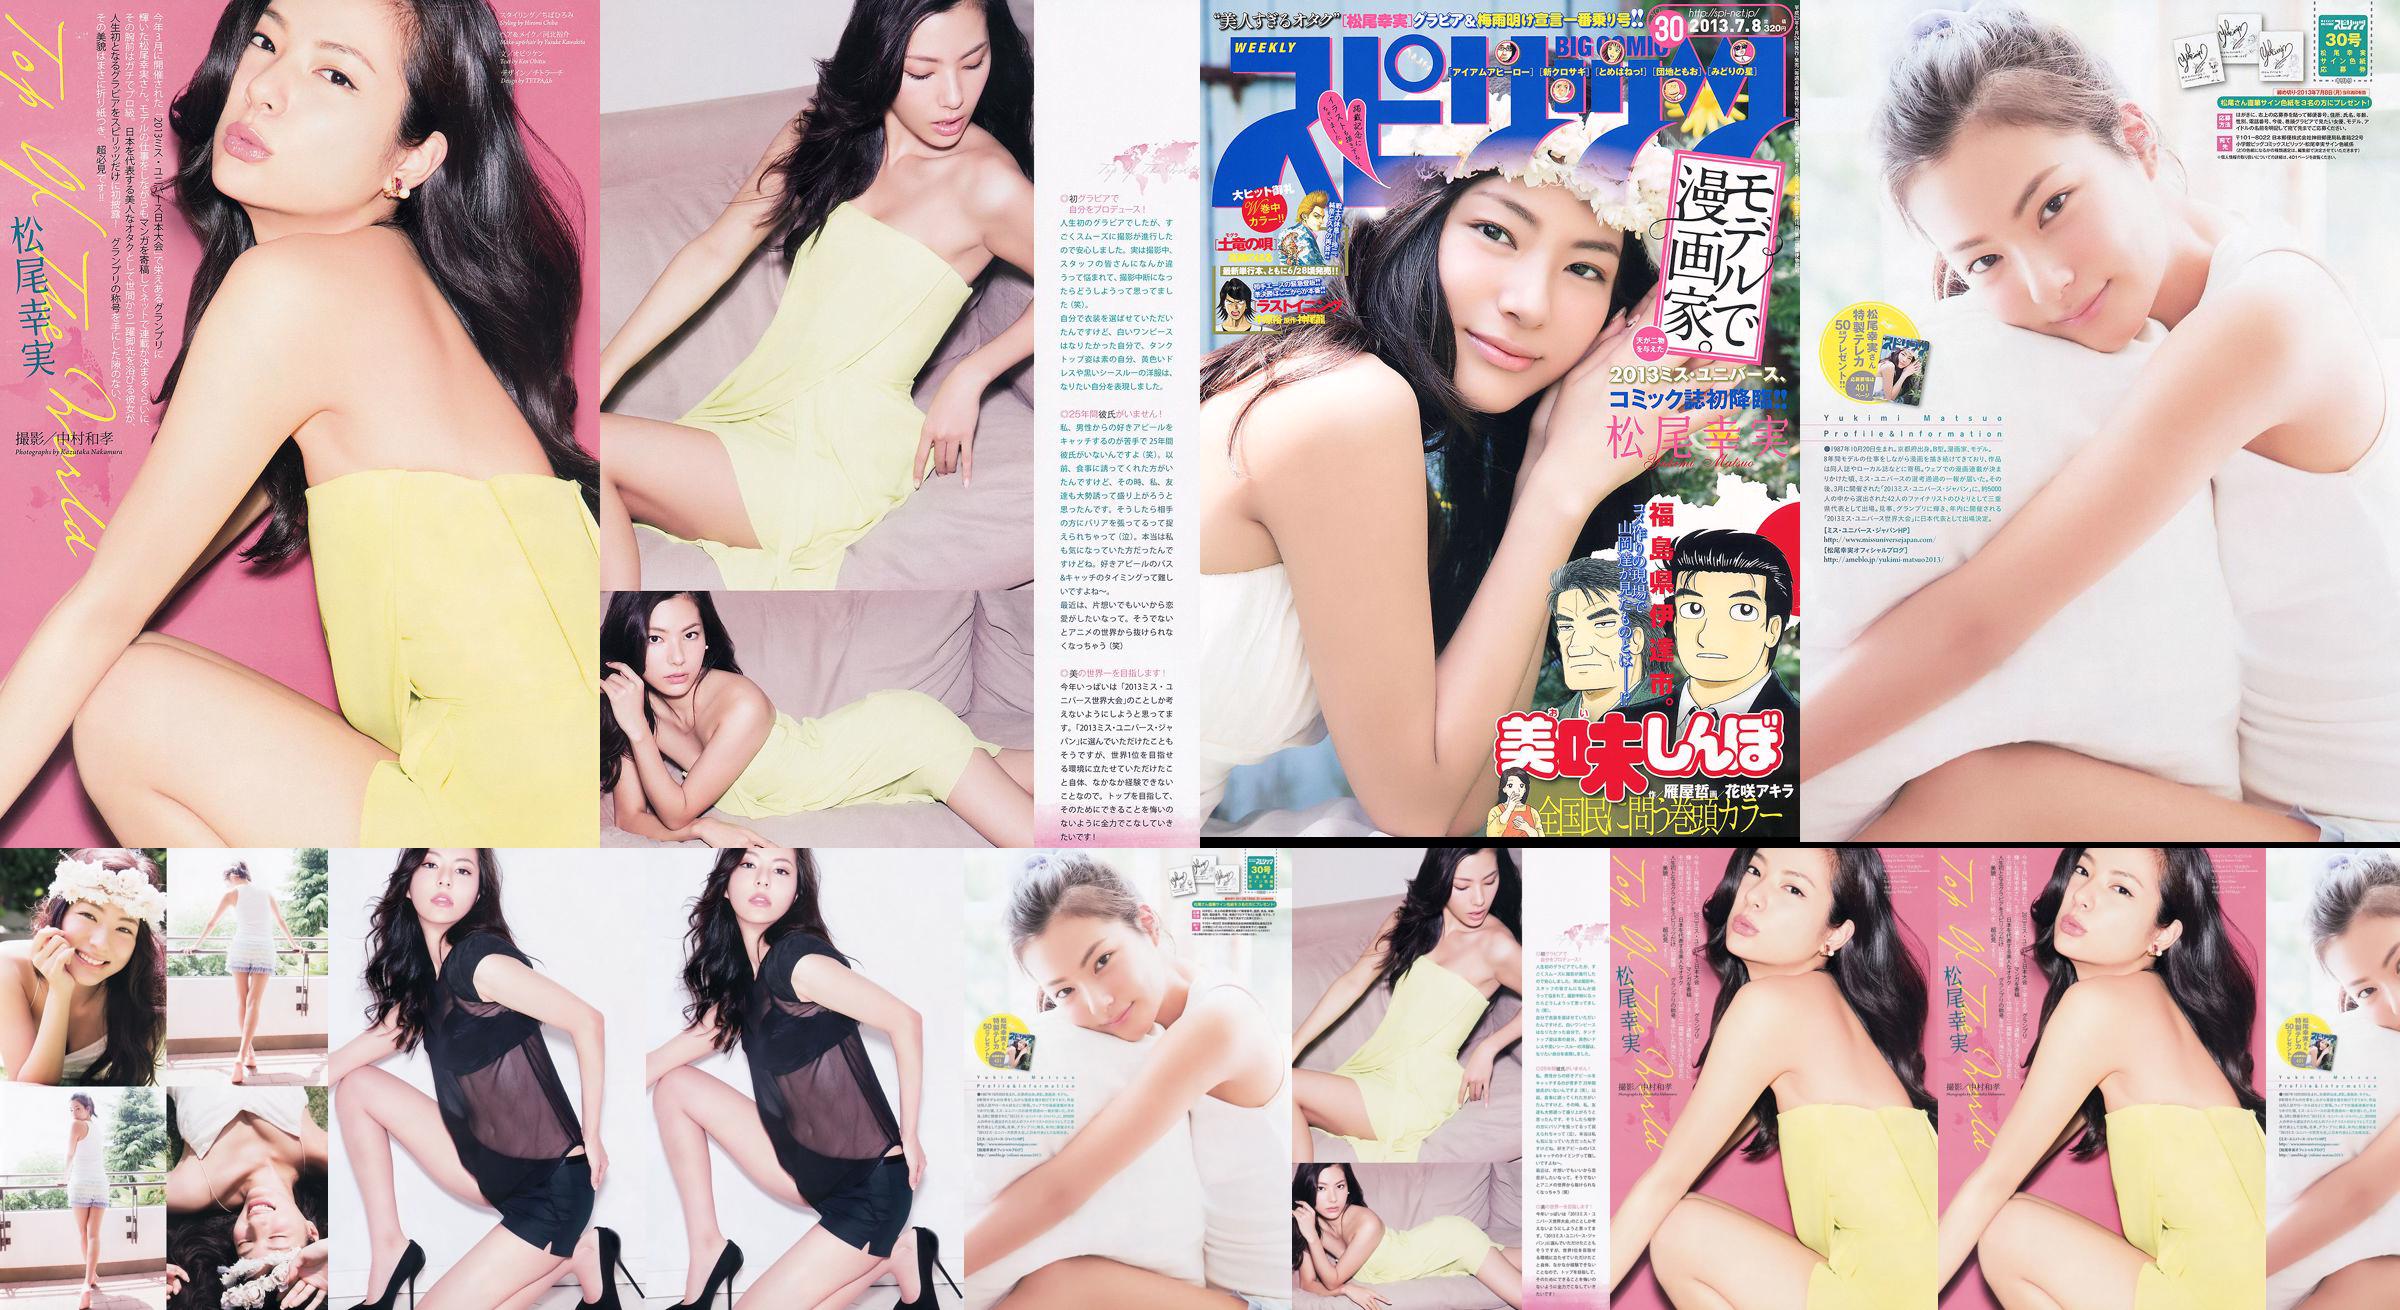 [Weekly Big Comic Spirits] Komi Matsuo 2013 No.30 Photo Magazine No.cb4f2a Página 1